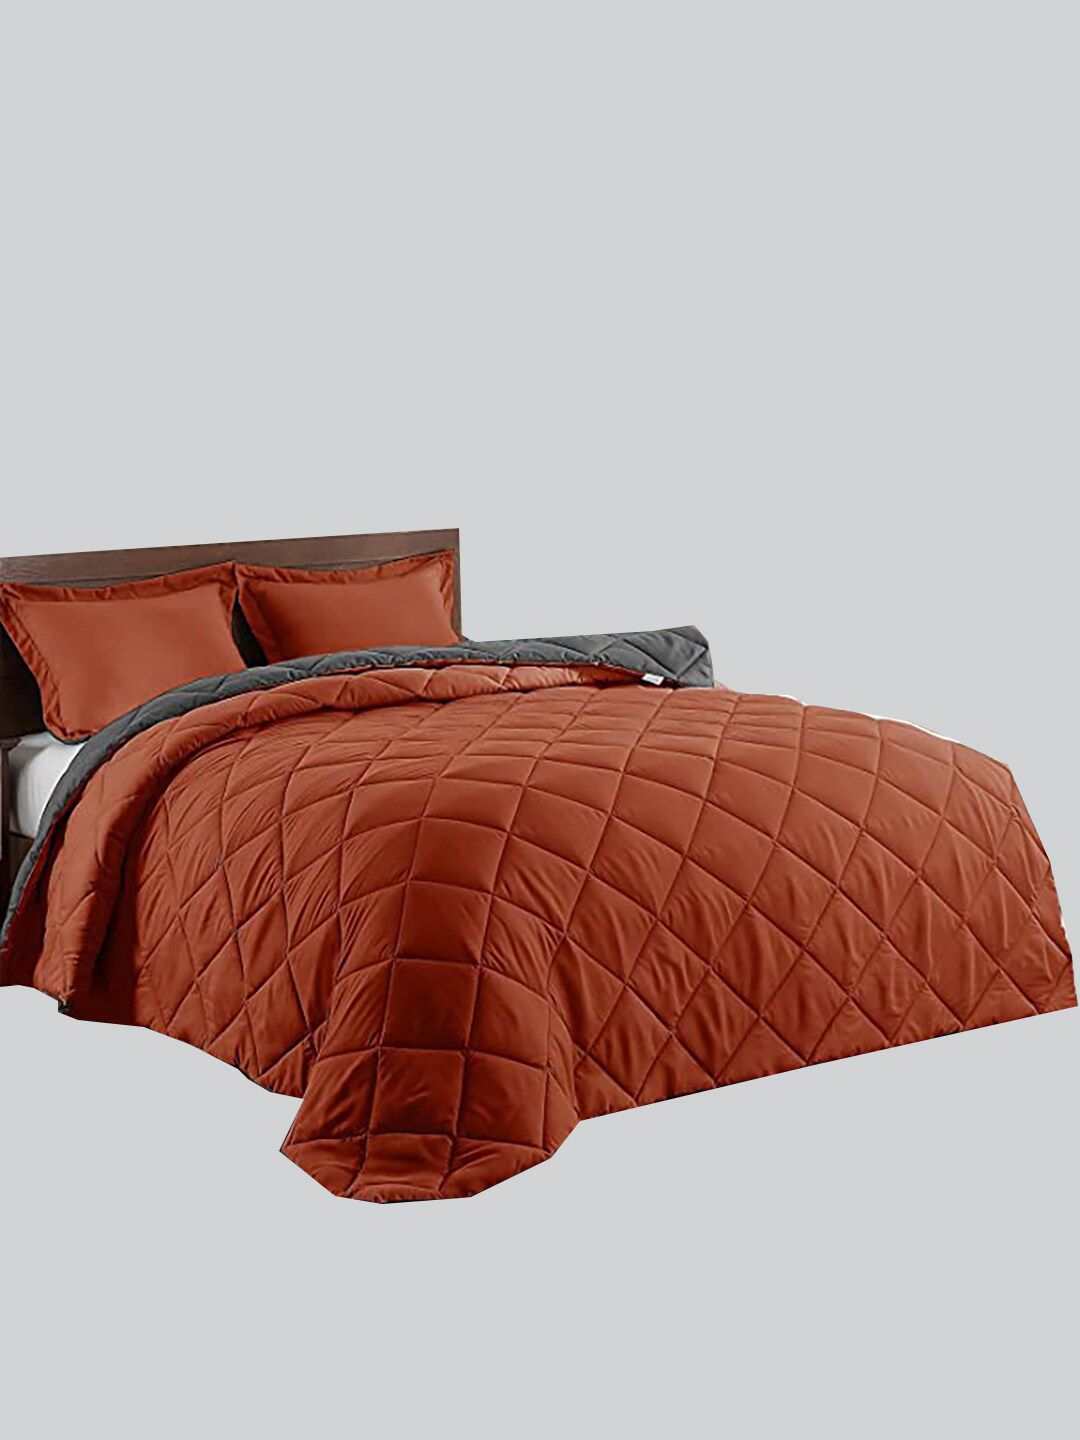 RAASO Rust & Grey Microfiber AC Room Reversible Single Bed Blanket Price in India